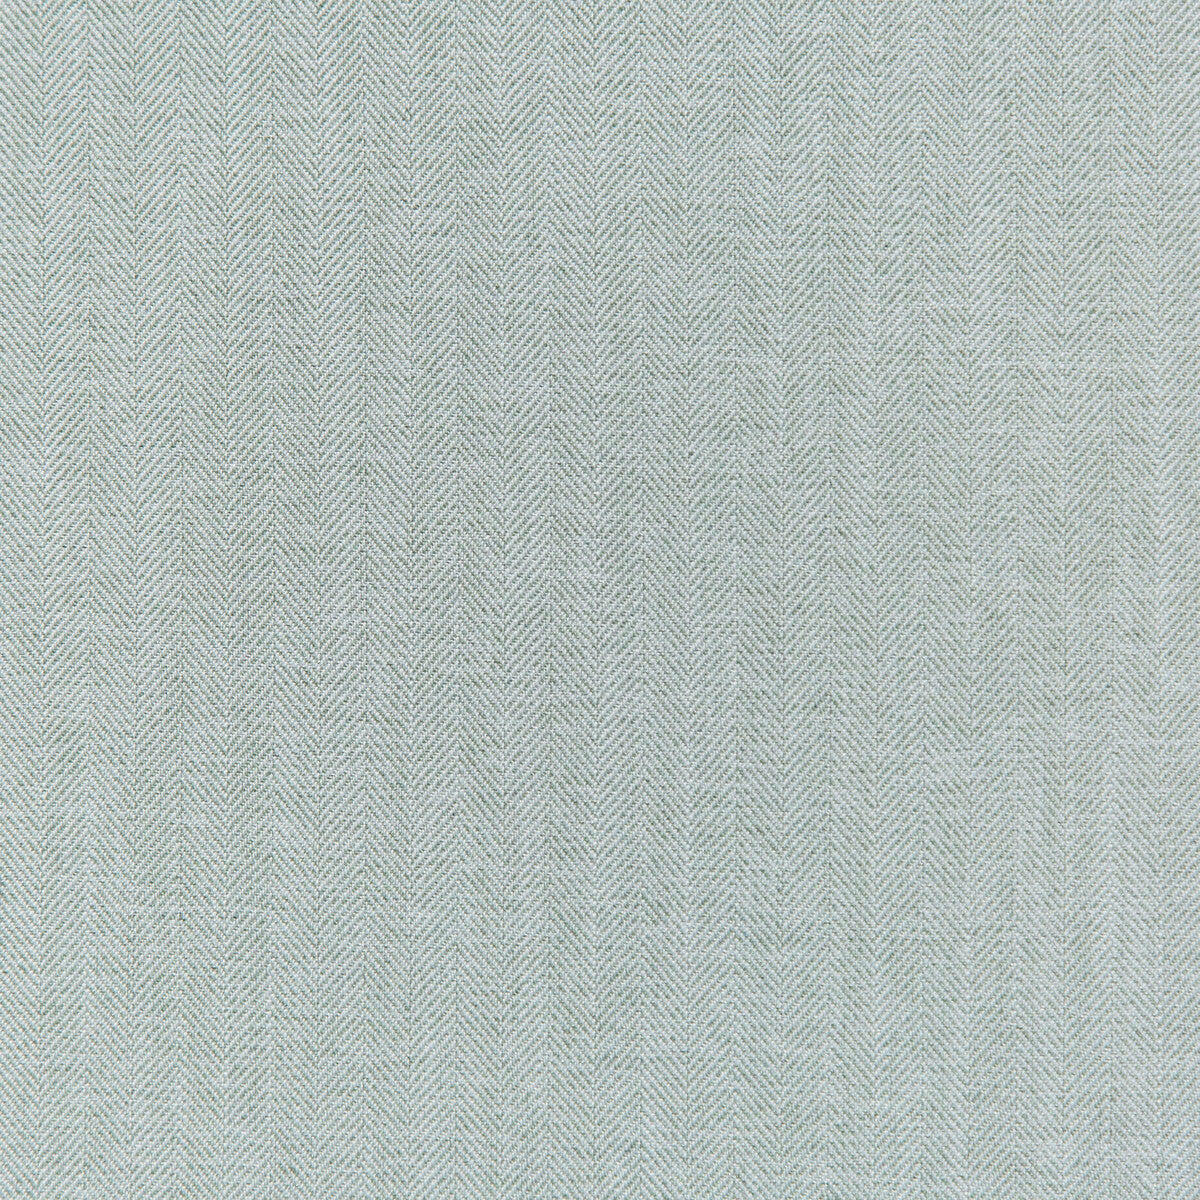 Kravet Basics fabric in 35782-15 color - pattern 35782.15.0 - by Kravet Basics